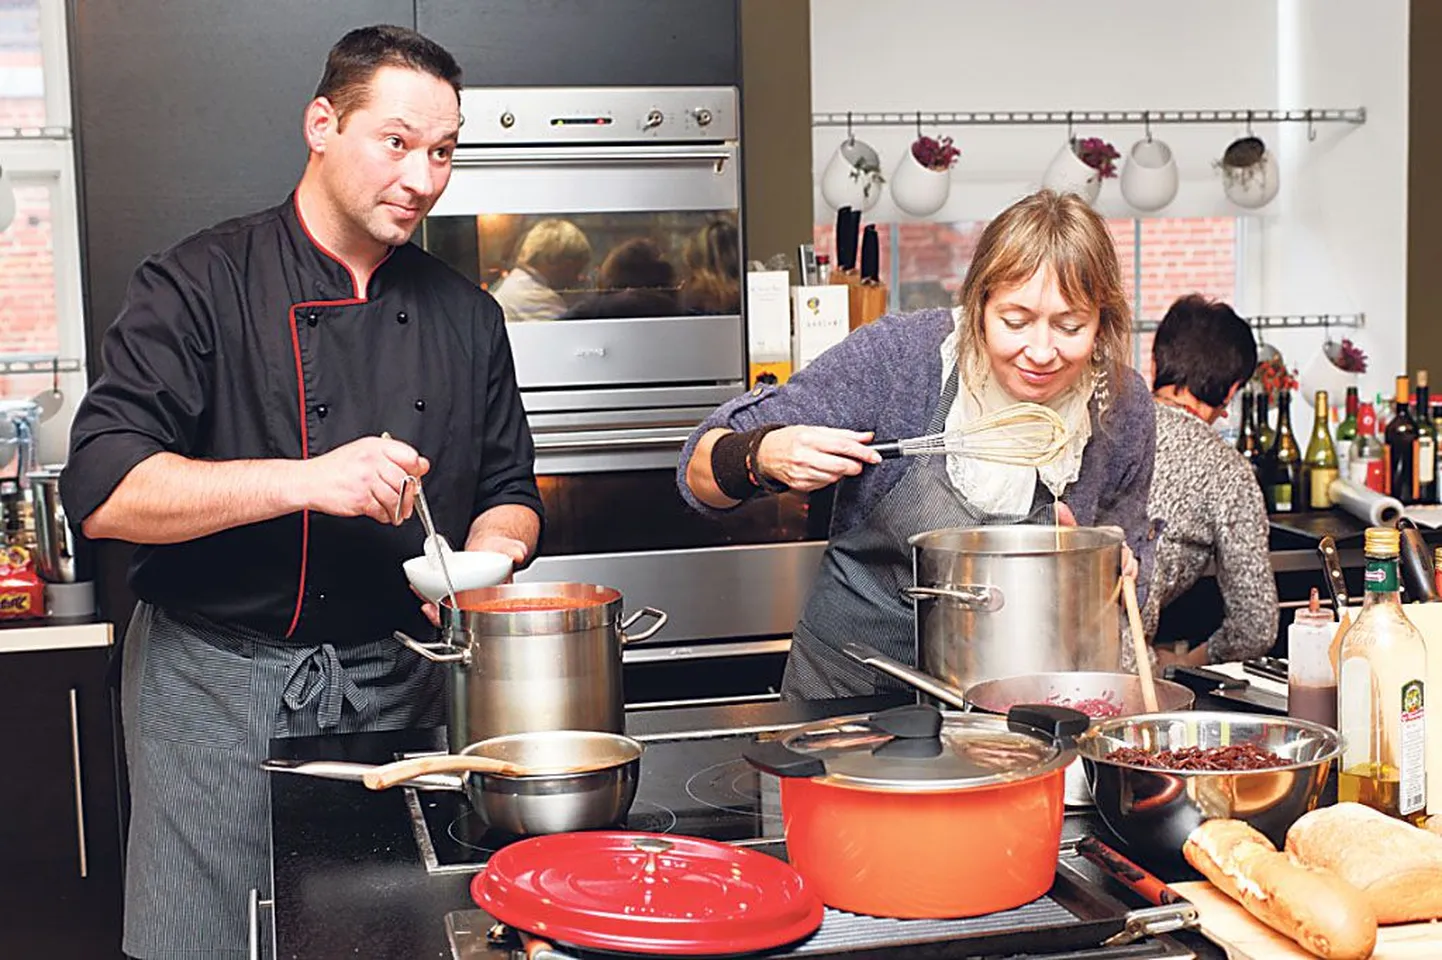 Riia südalinna restorani köögistuudio pakub lahedat meelelahutust - koos kokkadega saab valmistatada endale gurmeeroogasid. Pildil keedab loo autor seenesuppi, kokk Arturs tomatikastet.